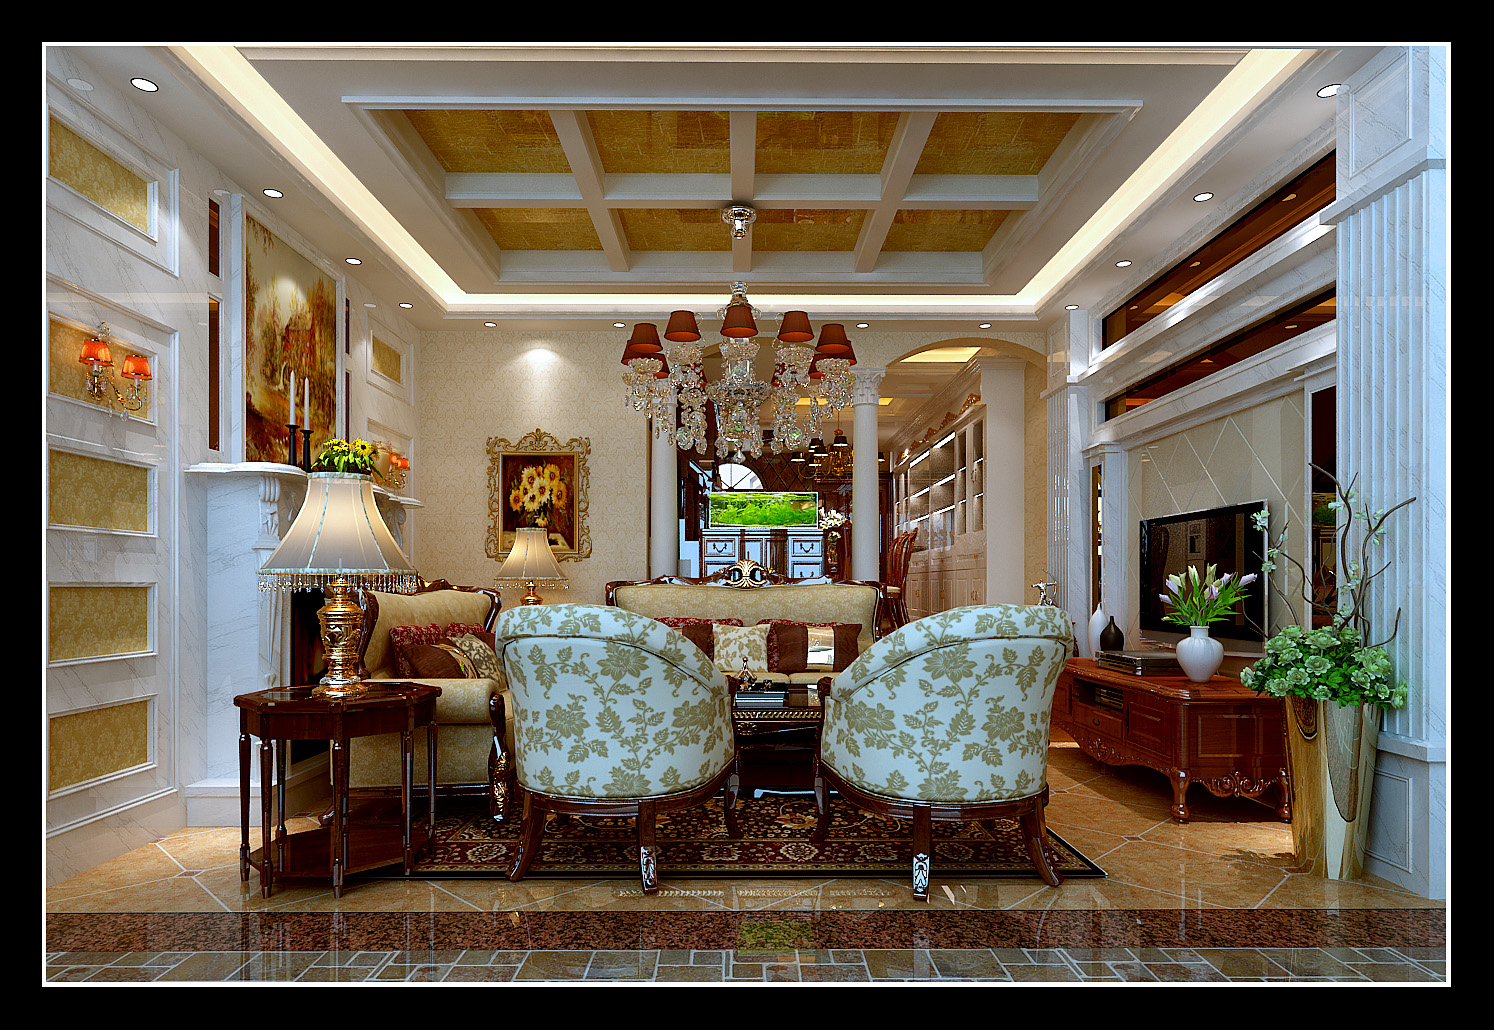 龙泊圣地 三居 欧式 客厅图片来自郑州实创装饰啊静在龙泊圣地129平欧式三居的分享